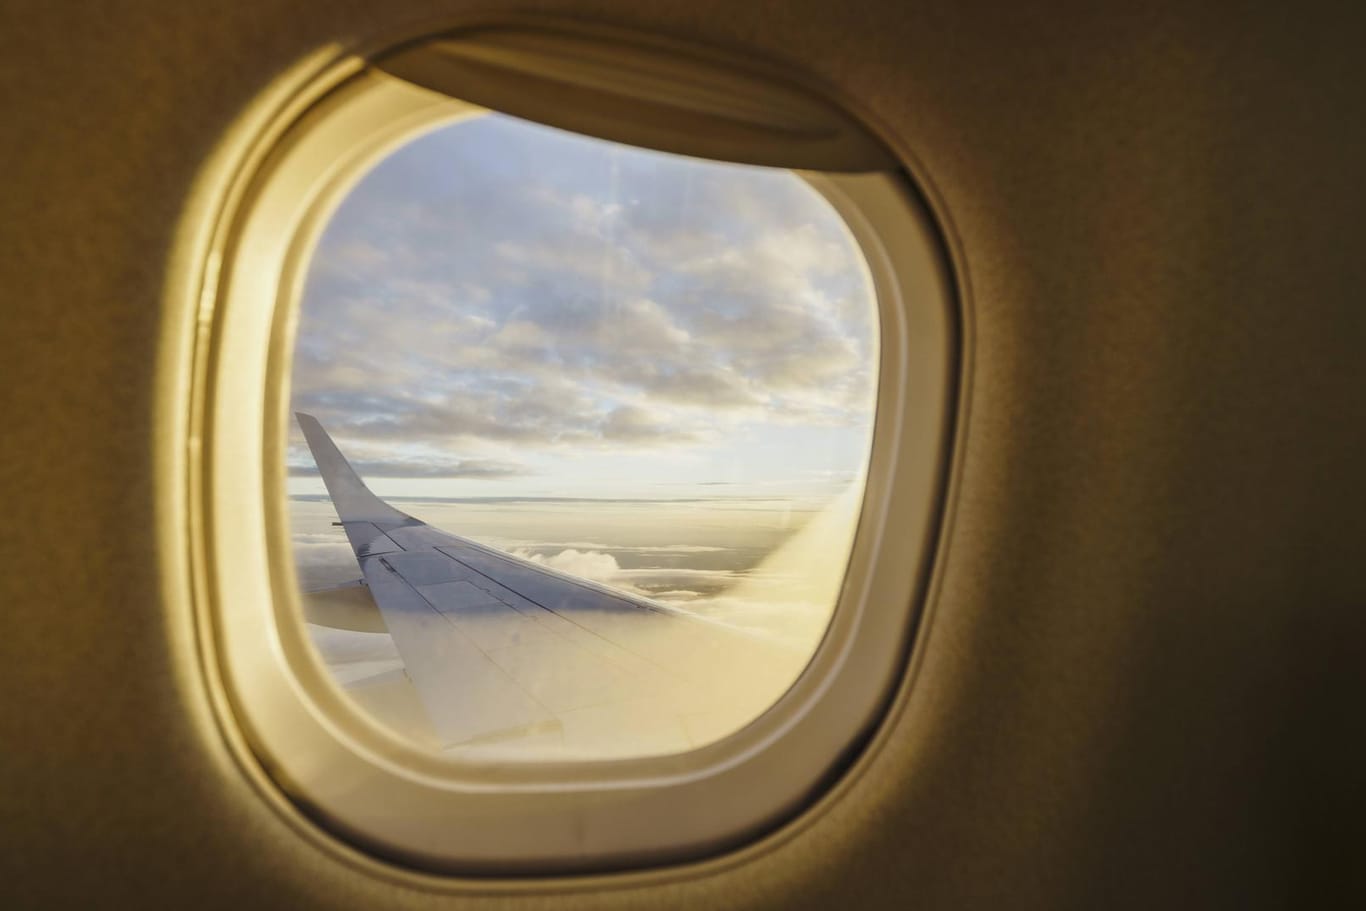 Flugzeugfenster: Die Sonnenblenden müssen zur Sicherheit der Passagiere beim Start und bei der Landung geöffnet bleiben.